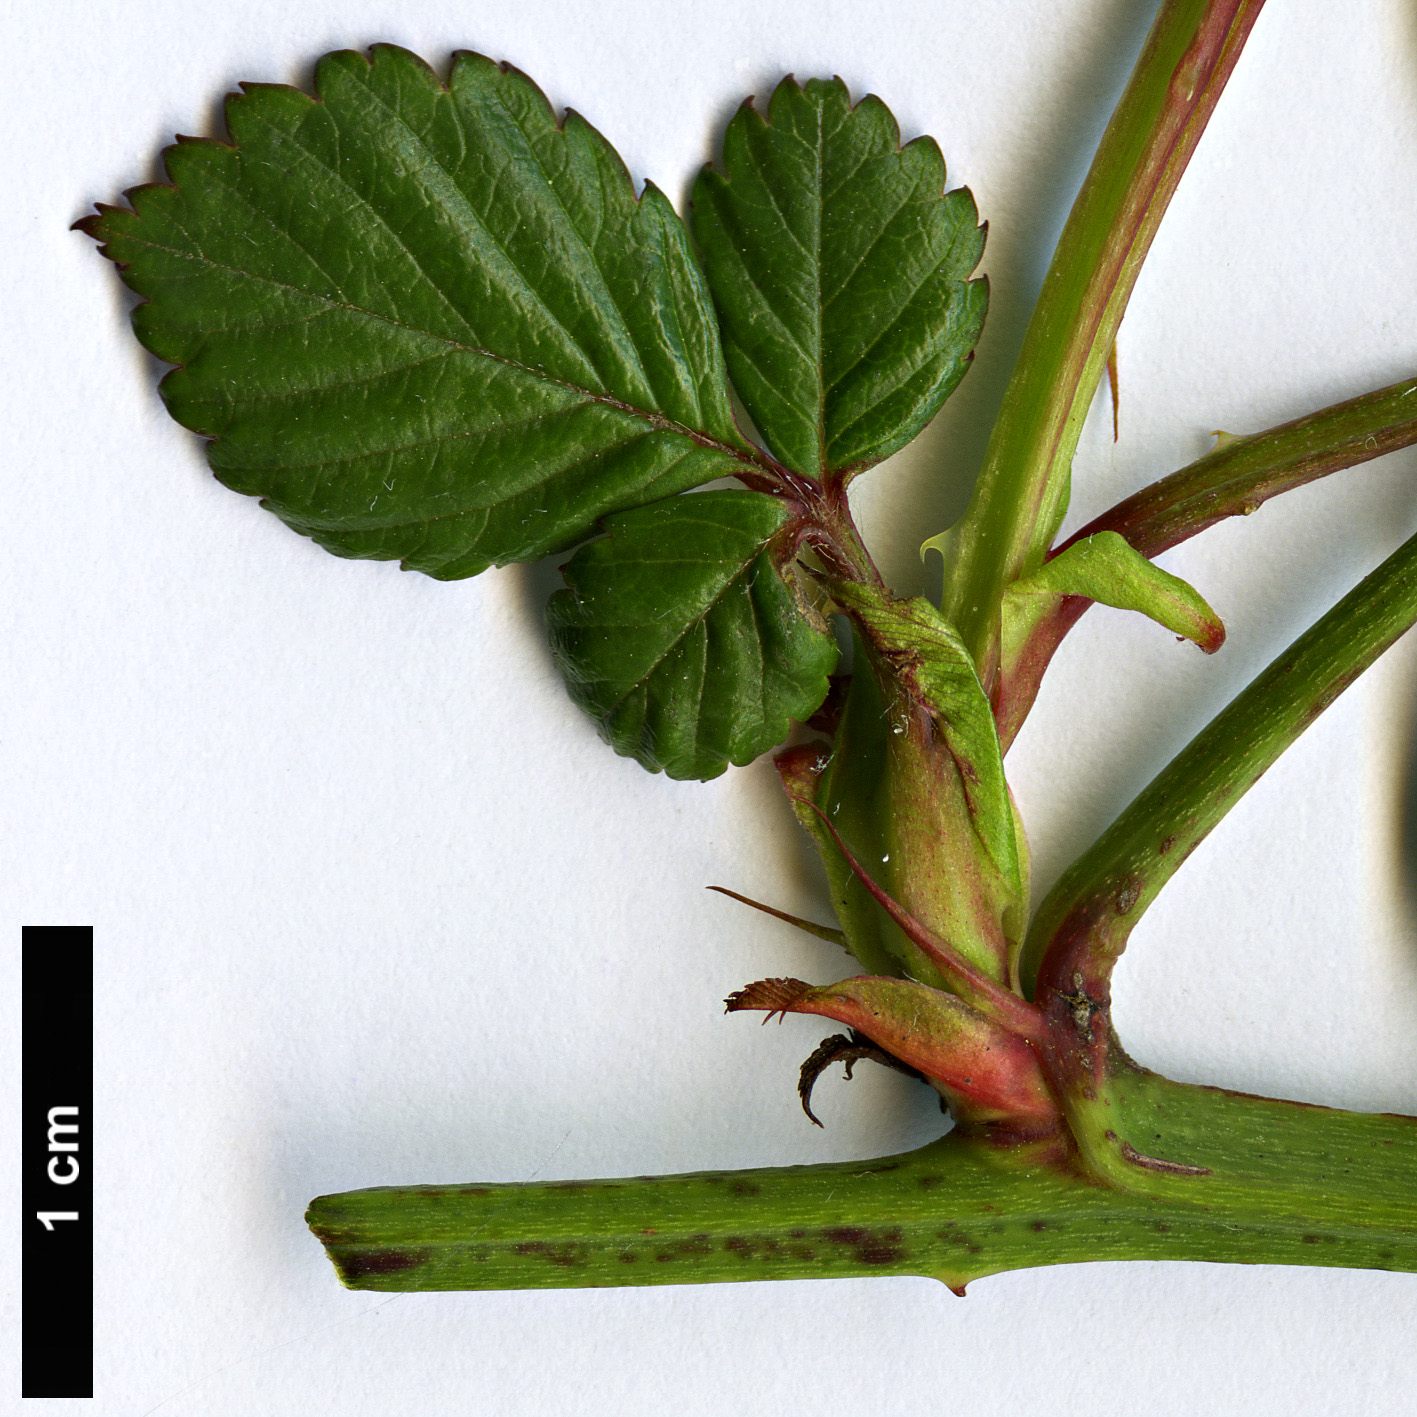 High resolution image: Family: Rosaceae - Genus: Rubus - Taxon: fraxinifolius